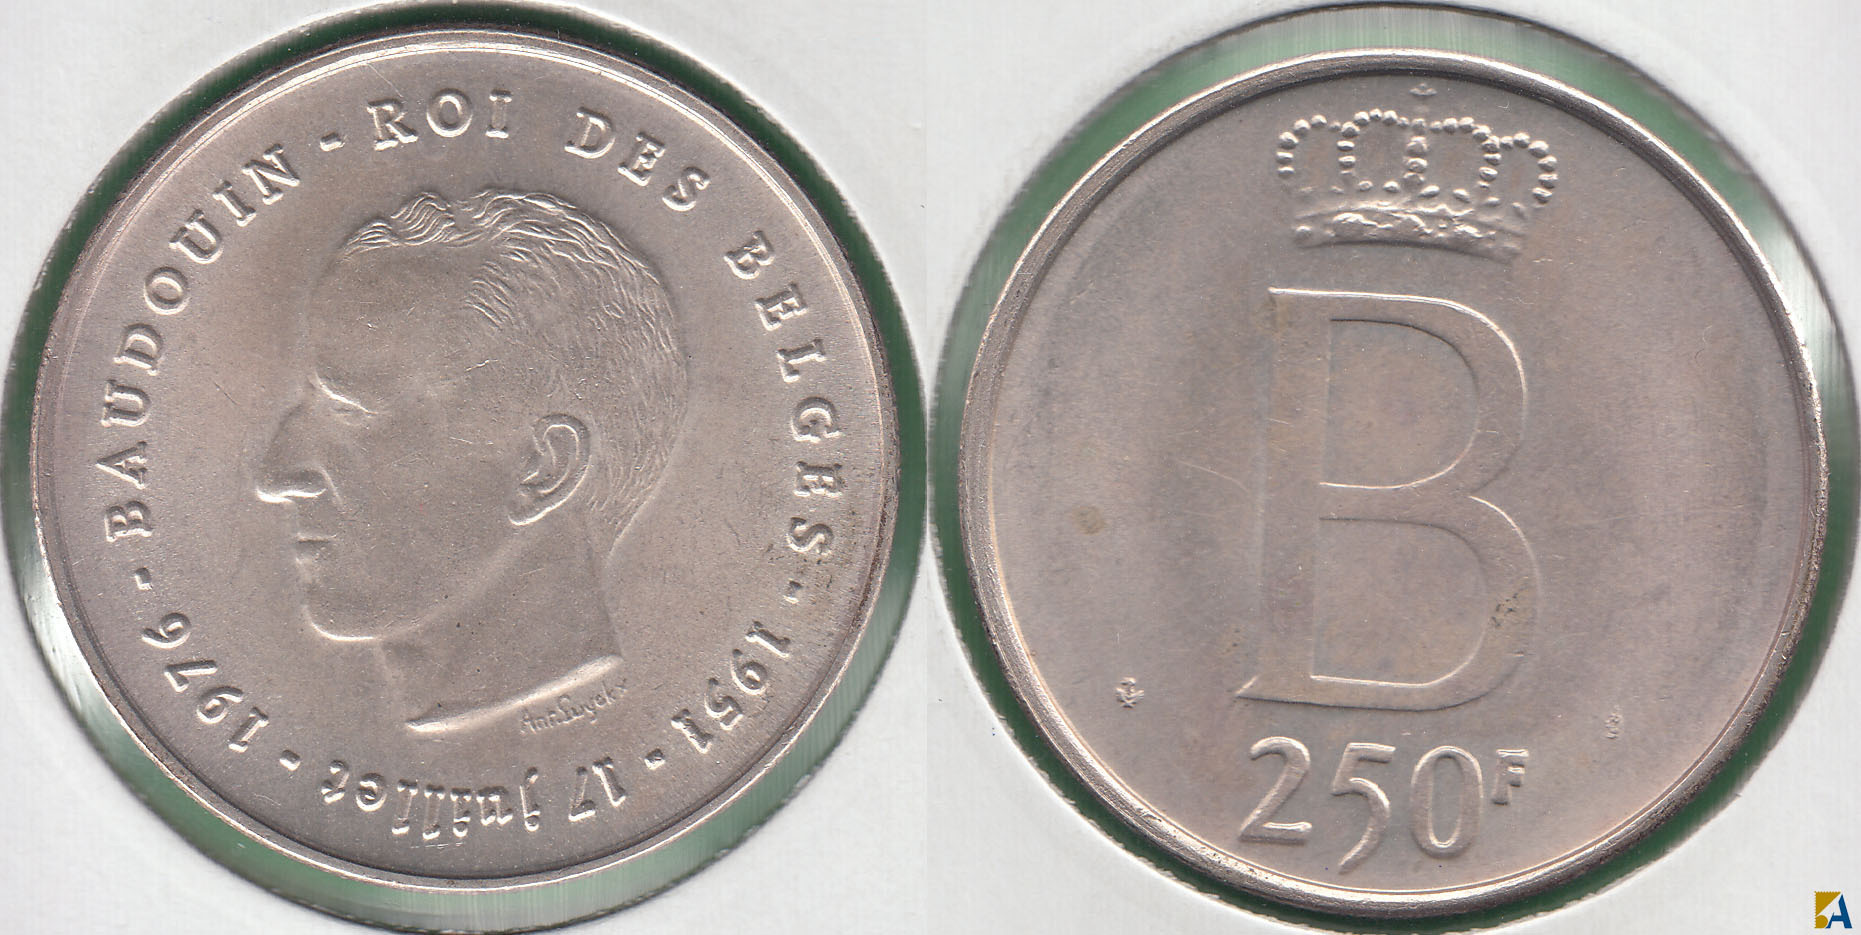 BELGICA - BELGIUM. 250 FRANCOS (FRANCS) DE 1976. PLATA 0.835.